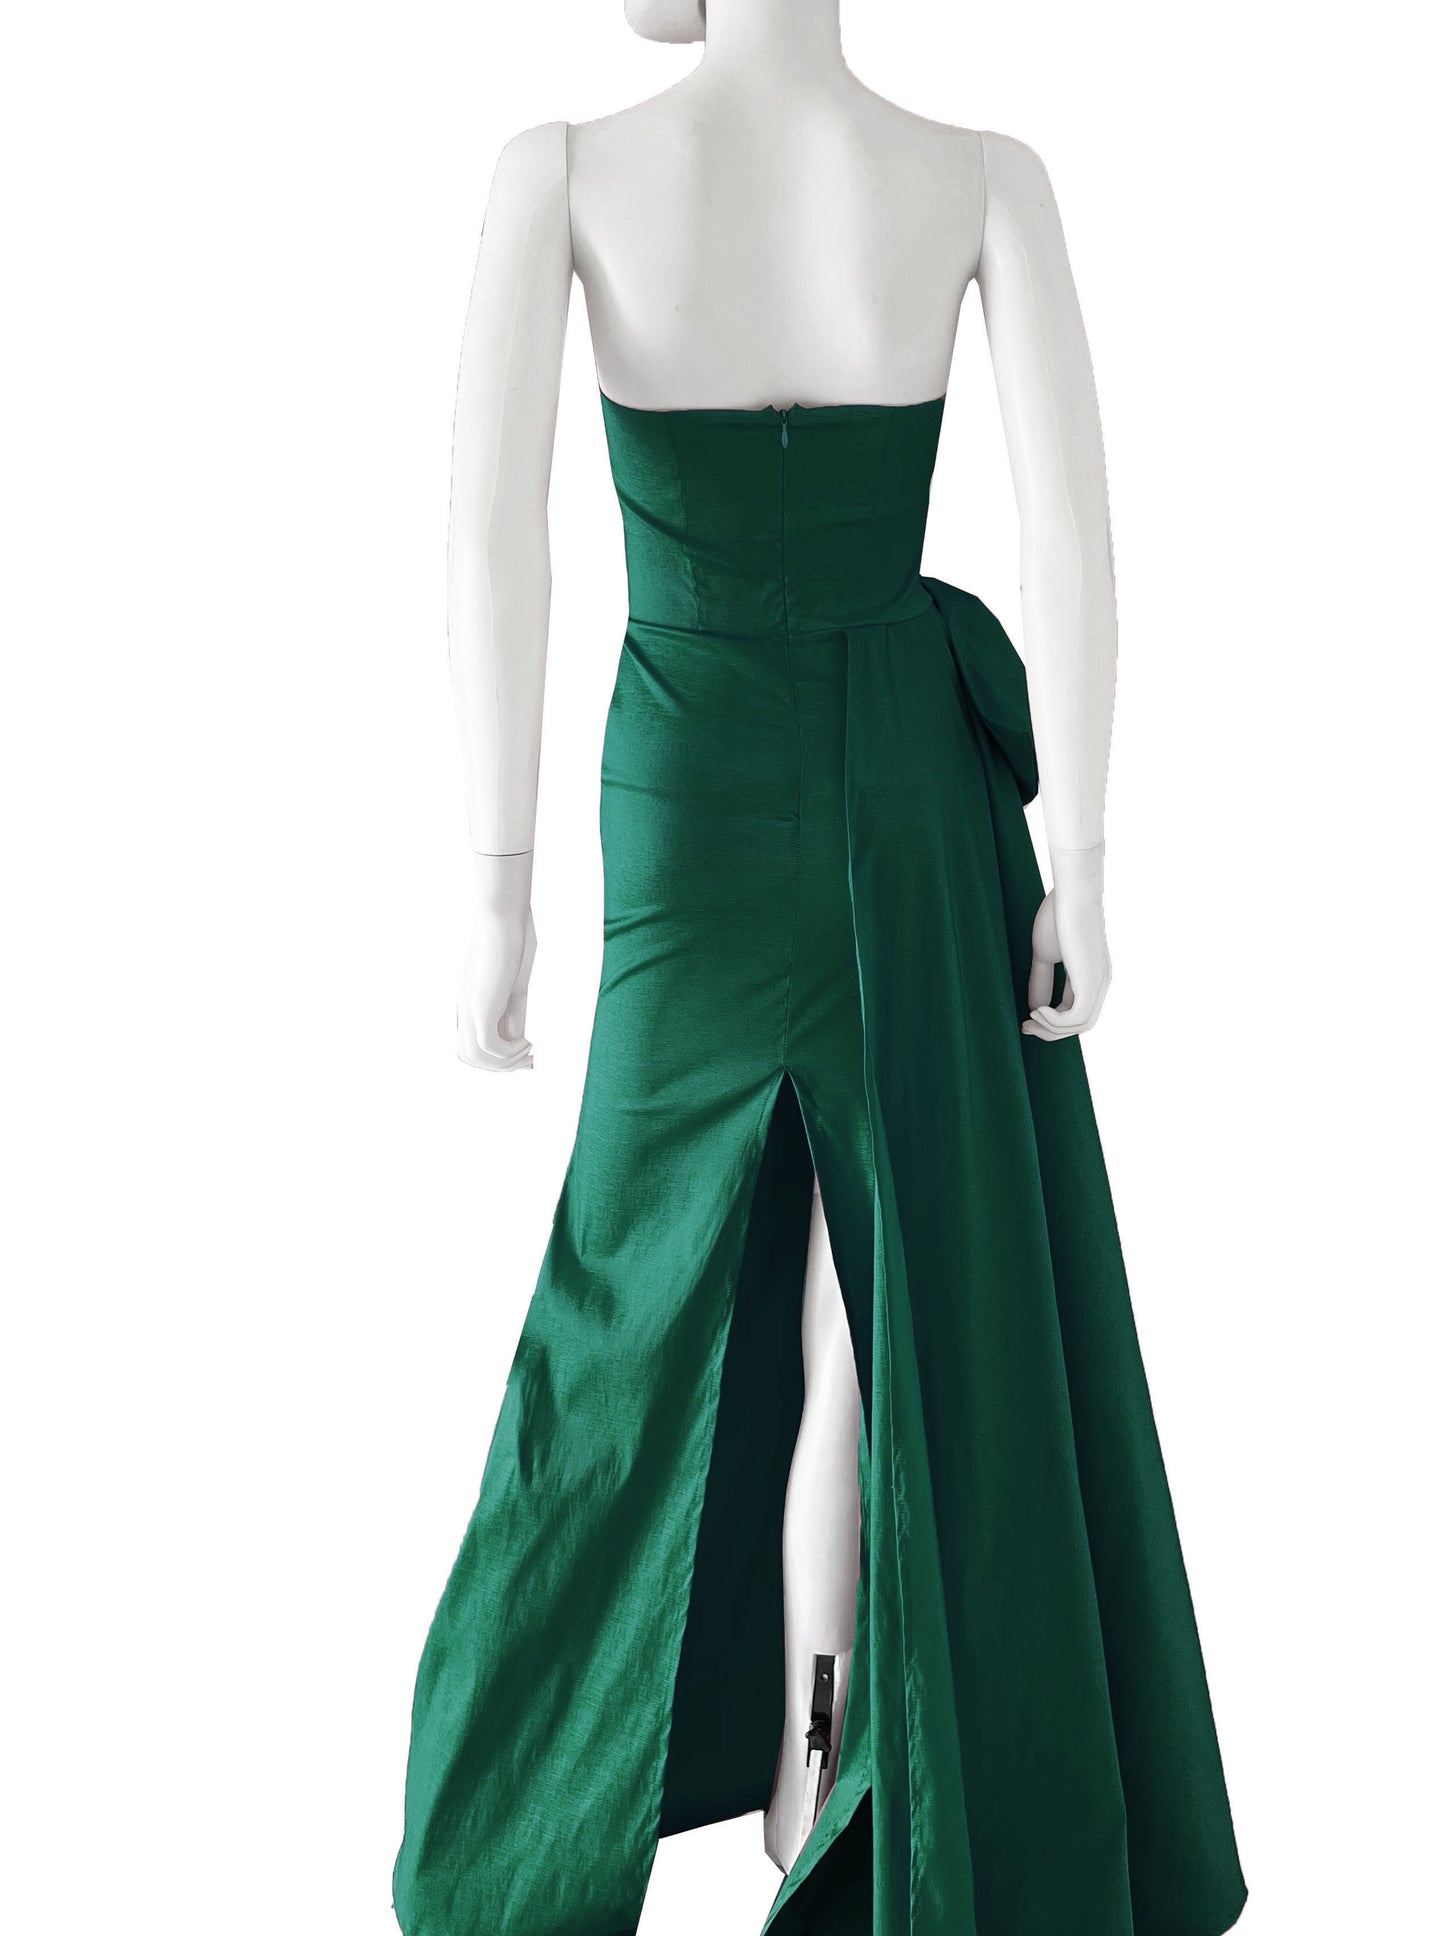 Vestido cauda lateral con moño verde.